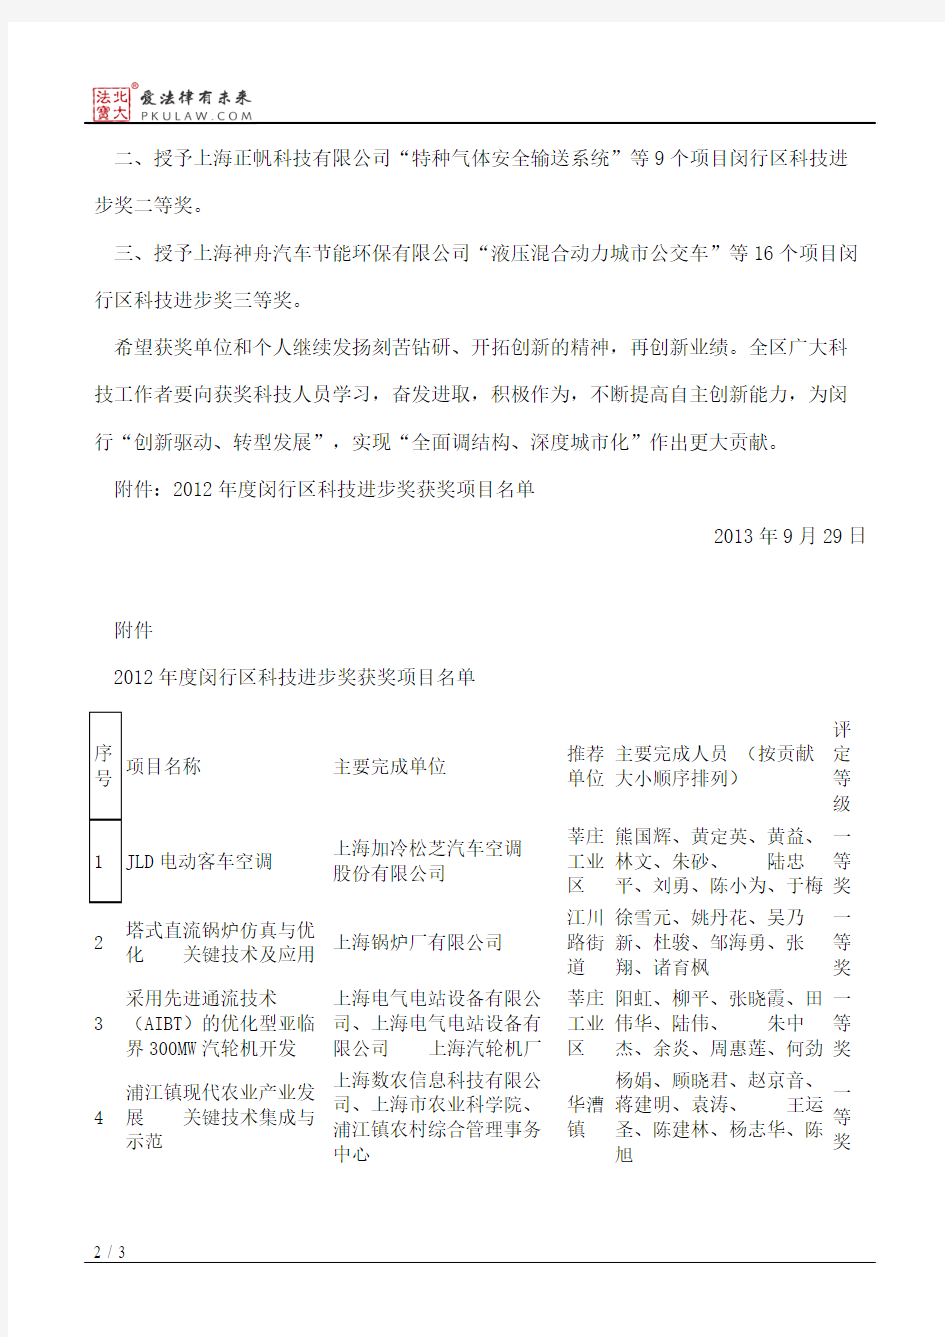 上海市闵行区人民政府关于表彰2012年度闵行区科技进步奖获奖项目的决定